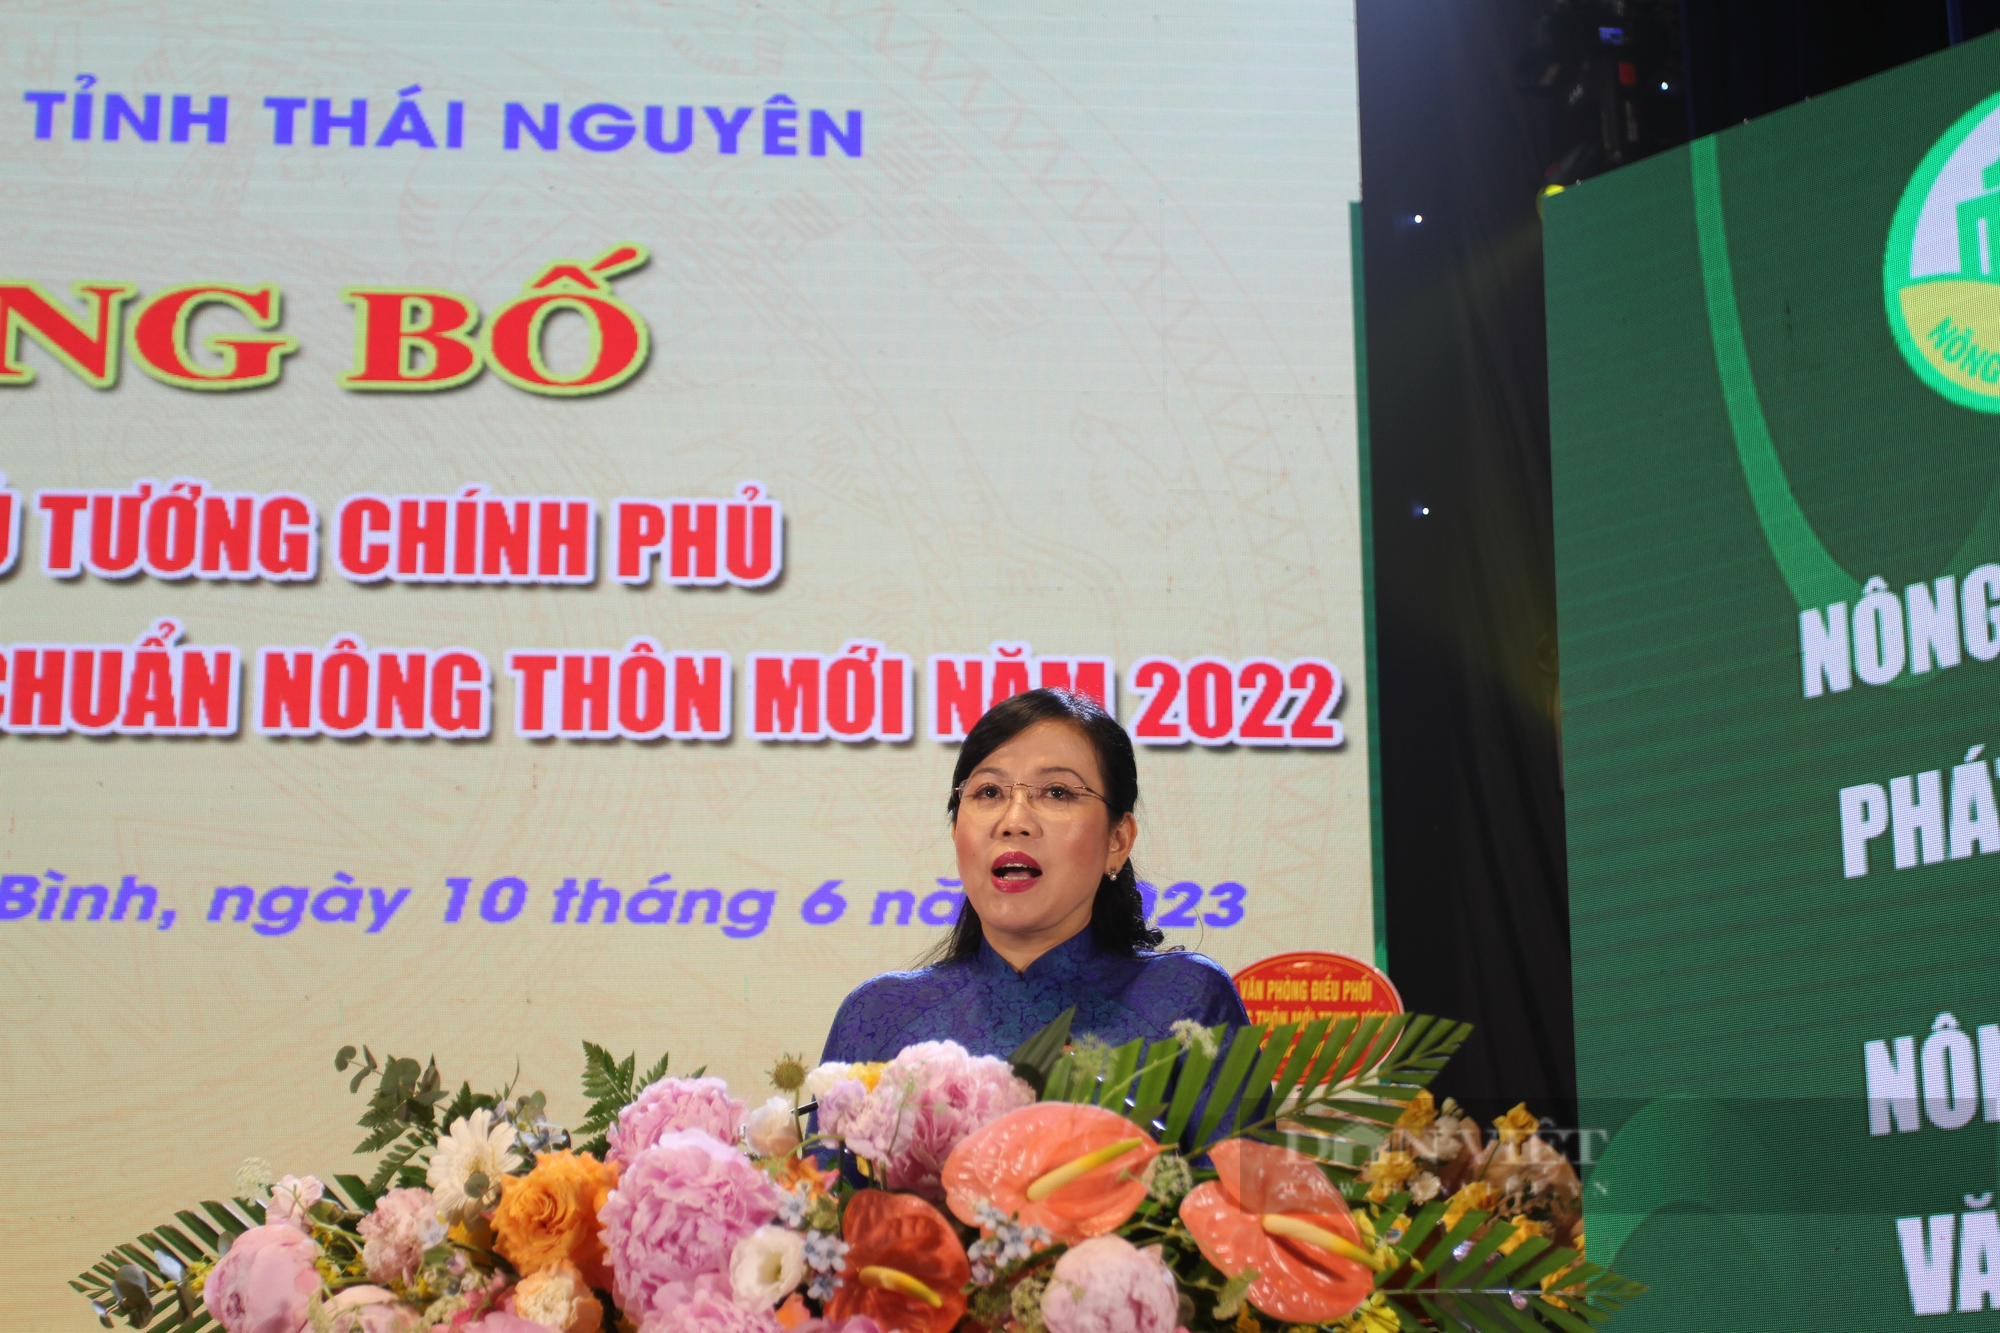 Huyện đầu tiên của tỉnh Thái Nguyên công bố quyết định đạt chuẩn nông thôn mới - Ảnh 4.